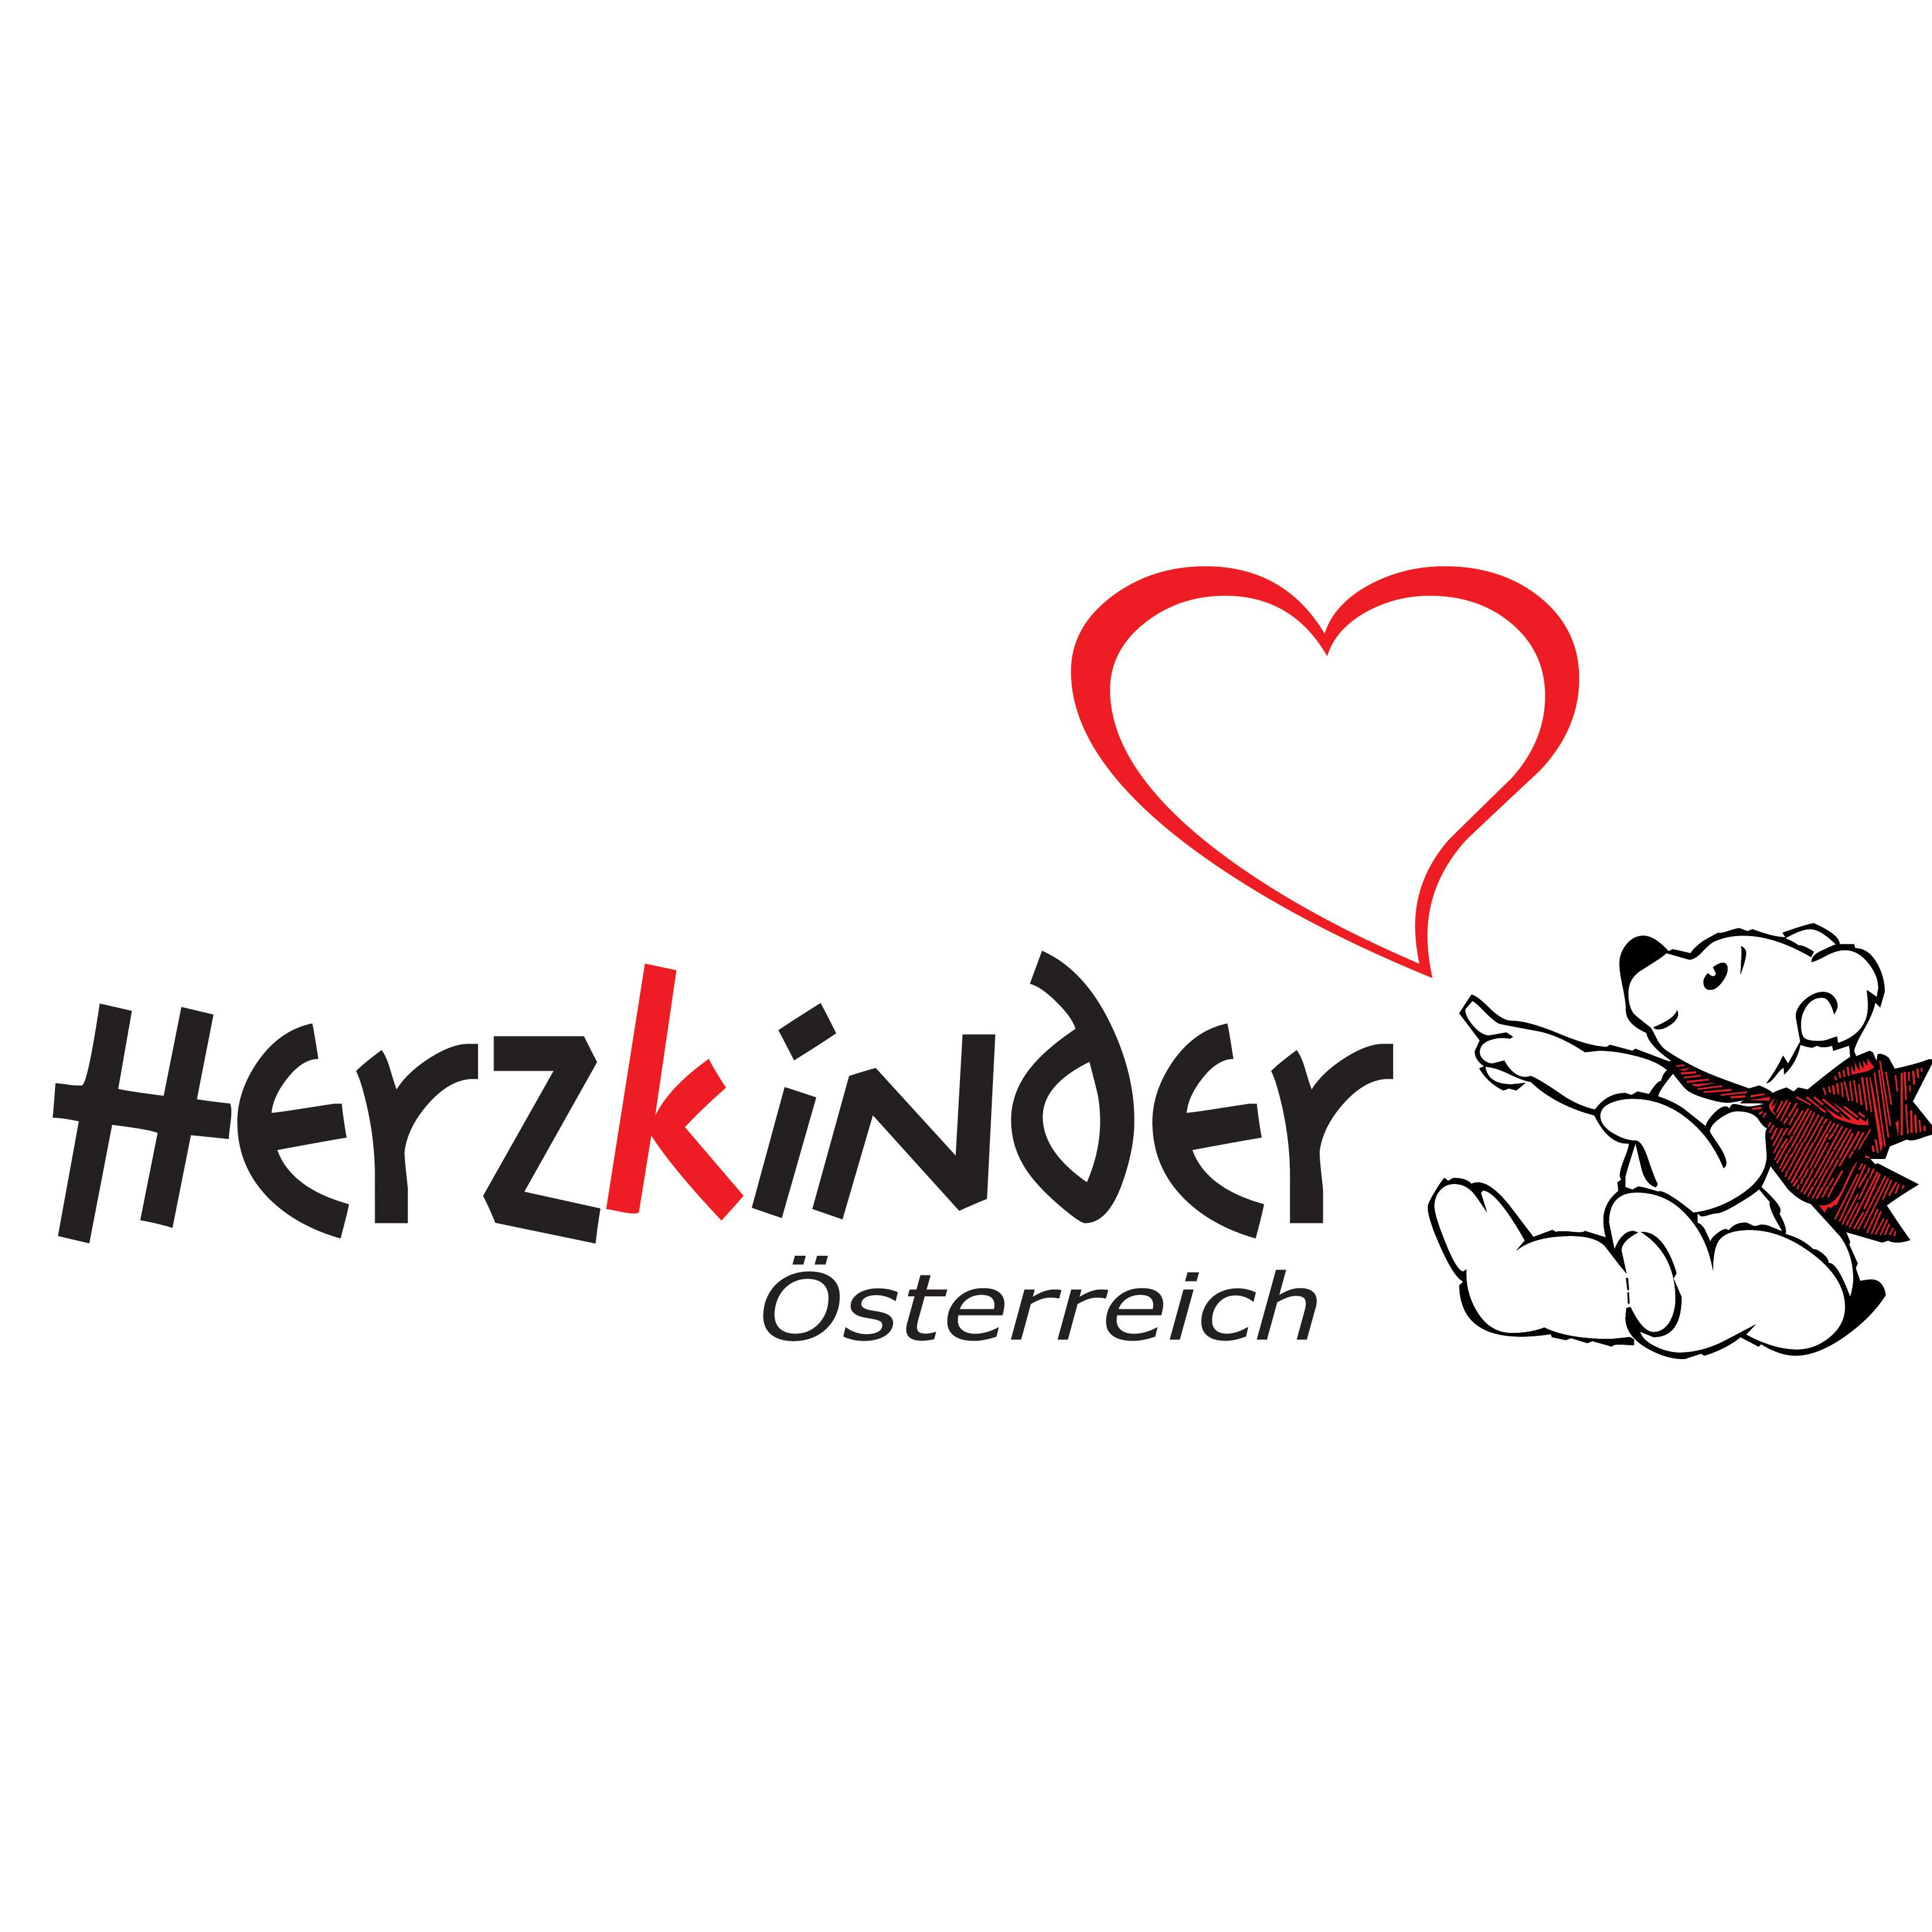 Herzkinder Österreich - Association Or Organization - Linz - 0664 5200931 Austria | ShowMeLocal.com